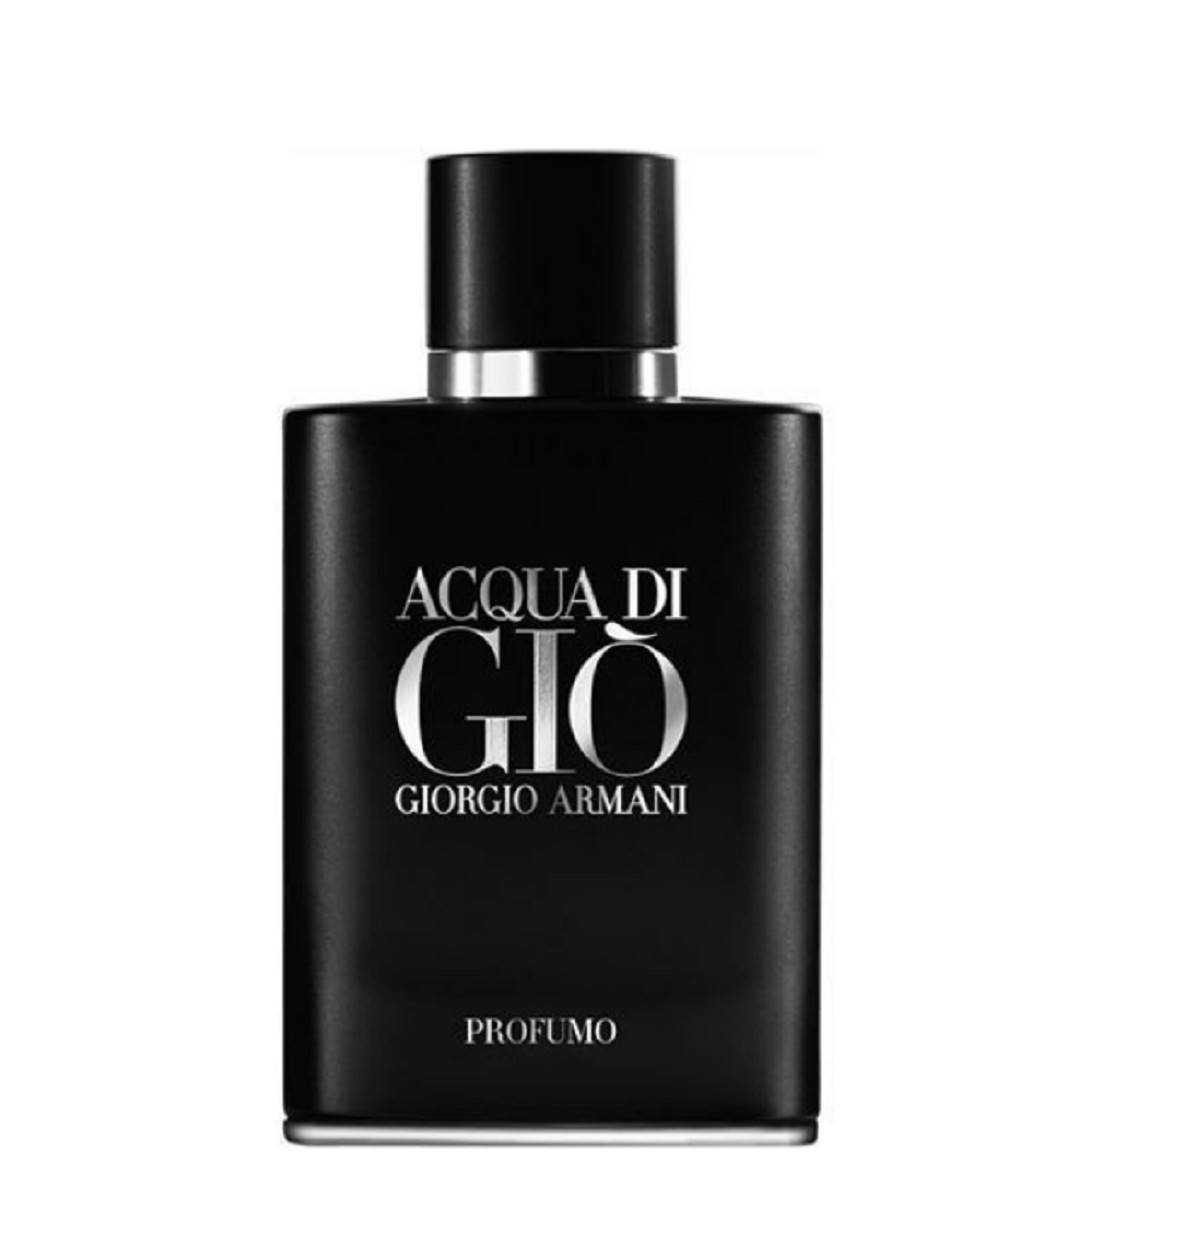  Giorgio Armani Acqua Di Gio parfem žene obožavaju da osete na muškarcu. 